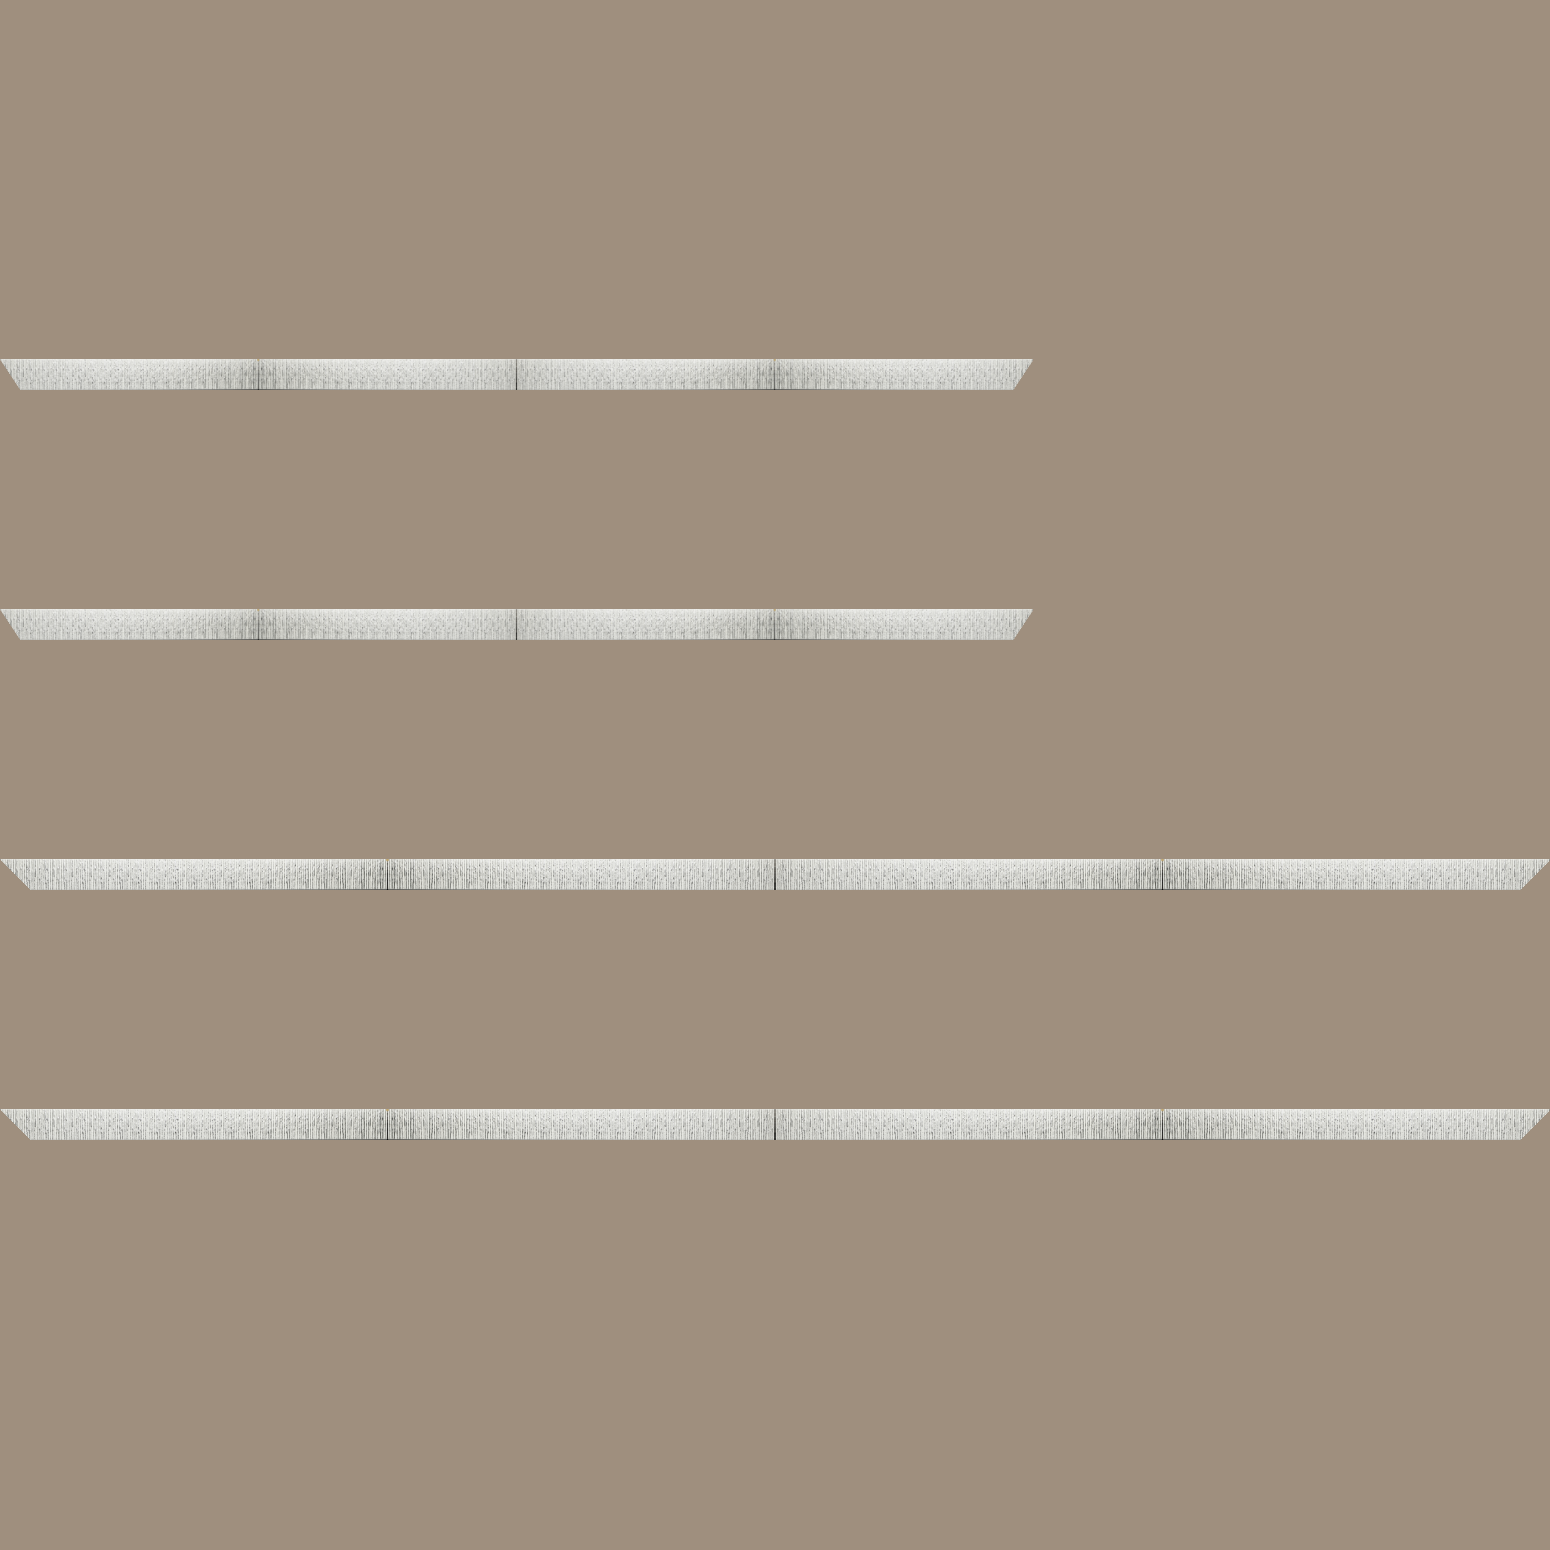 Baguette bois profil plat largeur 10.5cm couleur blanc mat strié argent chromé en relief - 30x60